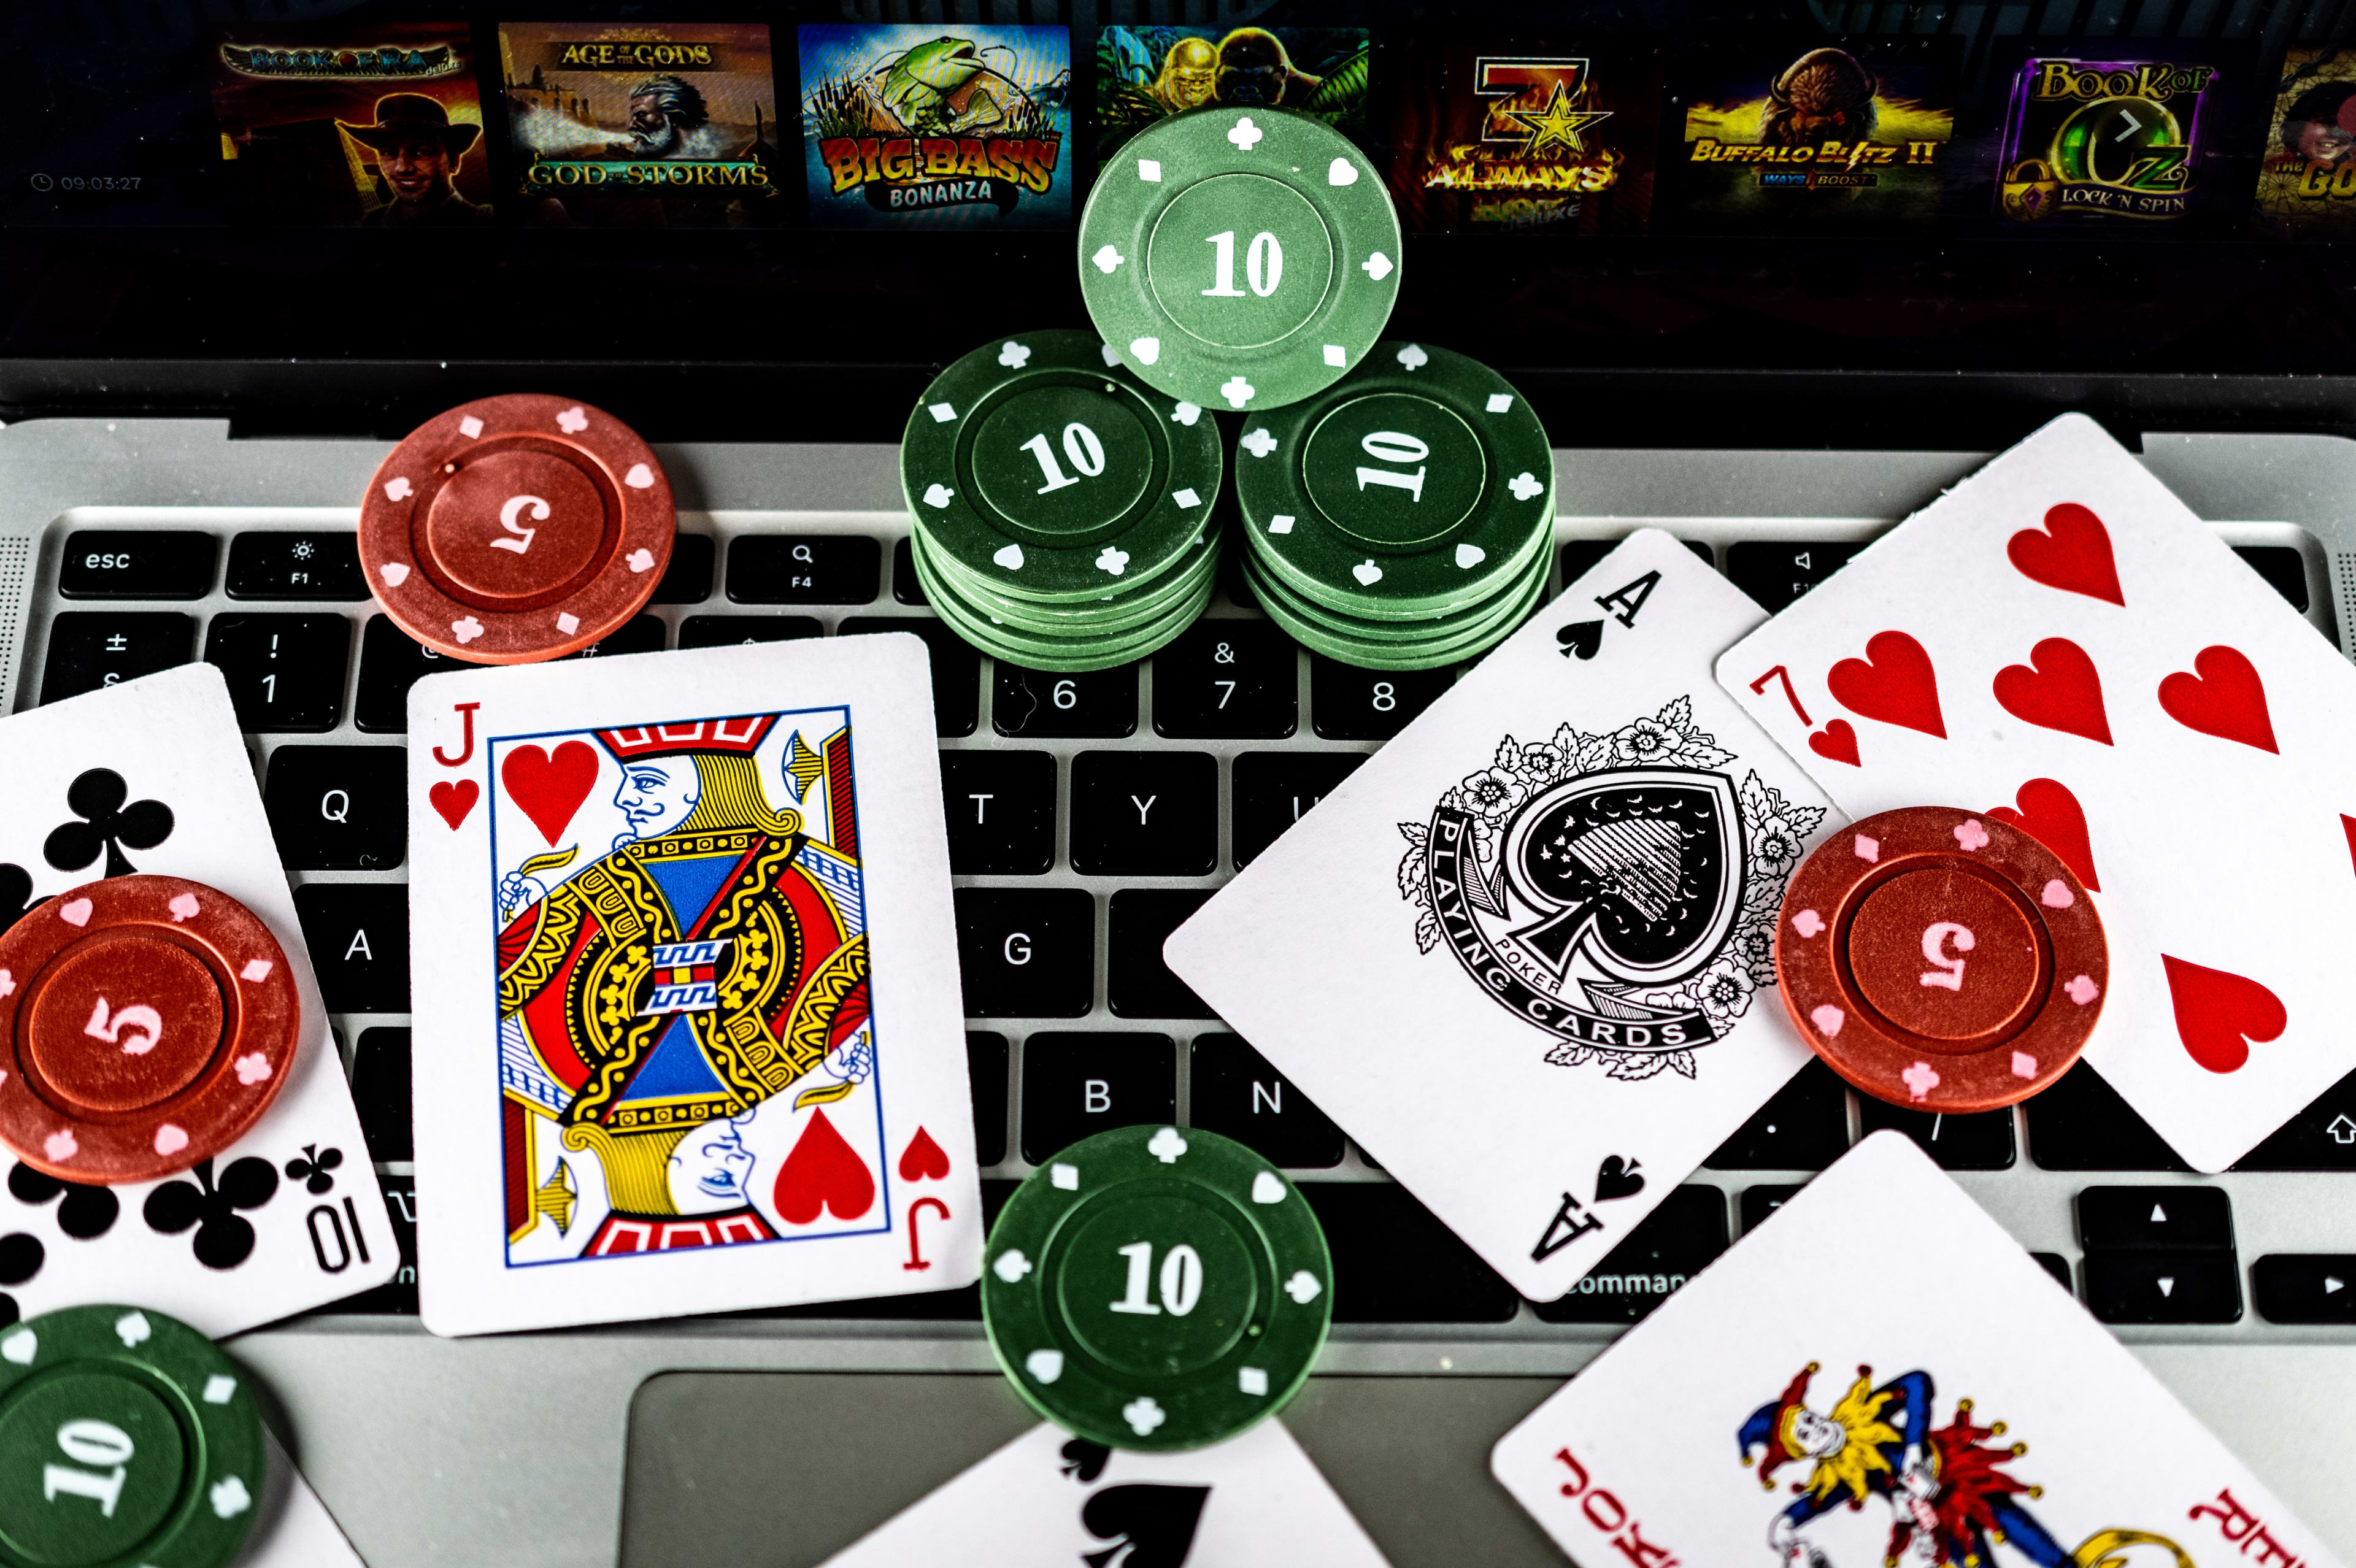 Bewijs van inkomsten en persoonlijk contact: mogelijk strengere regels voor online gokken